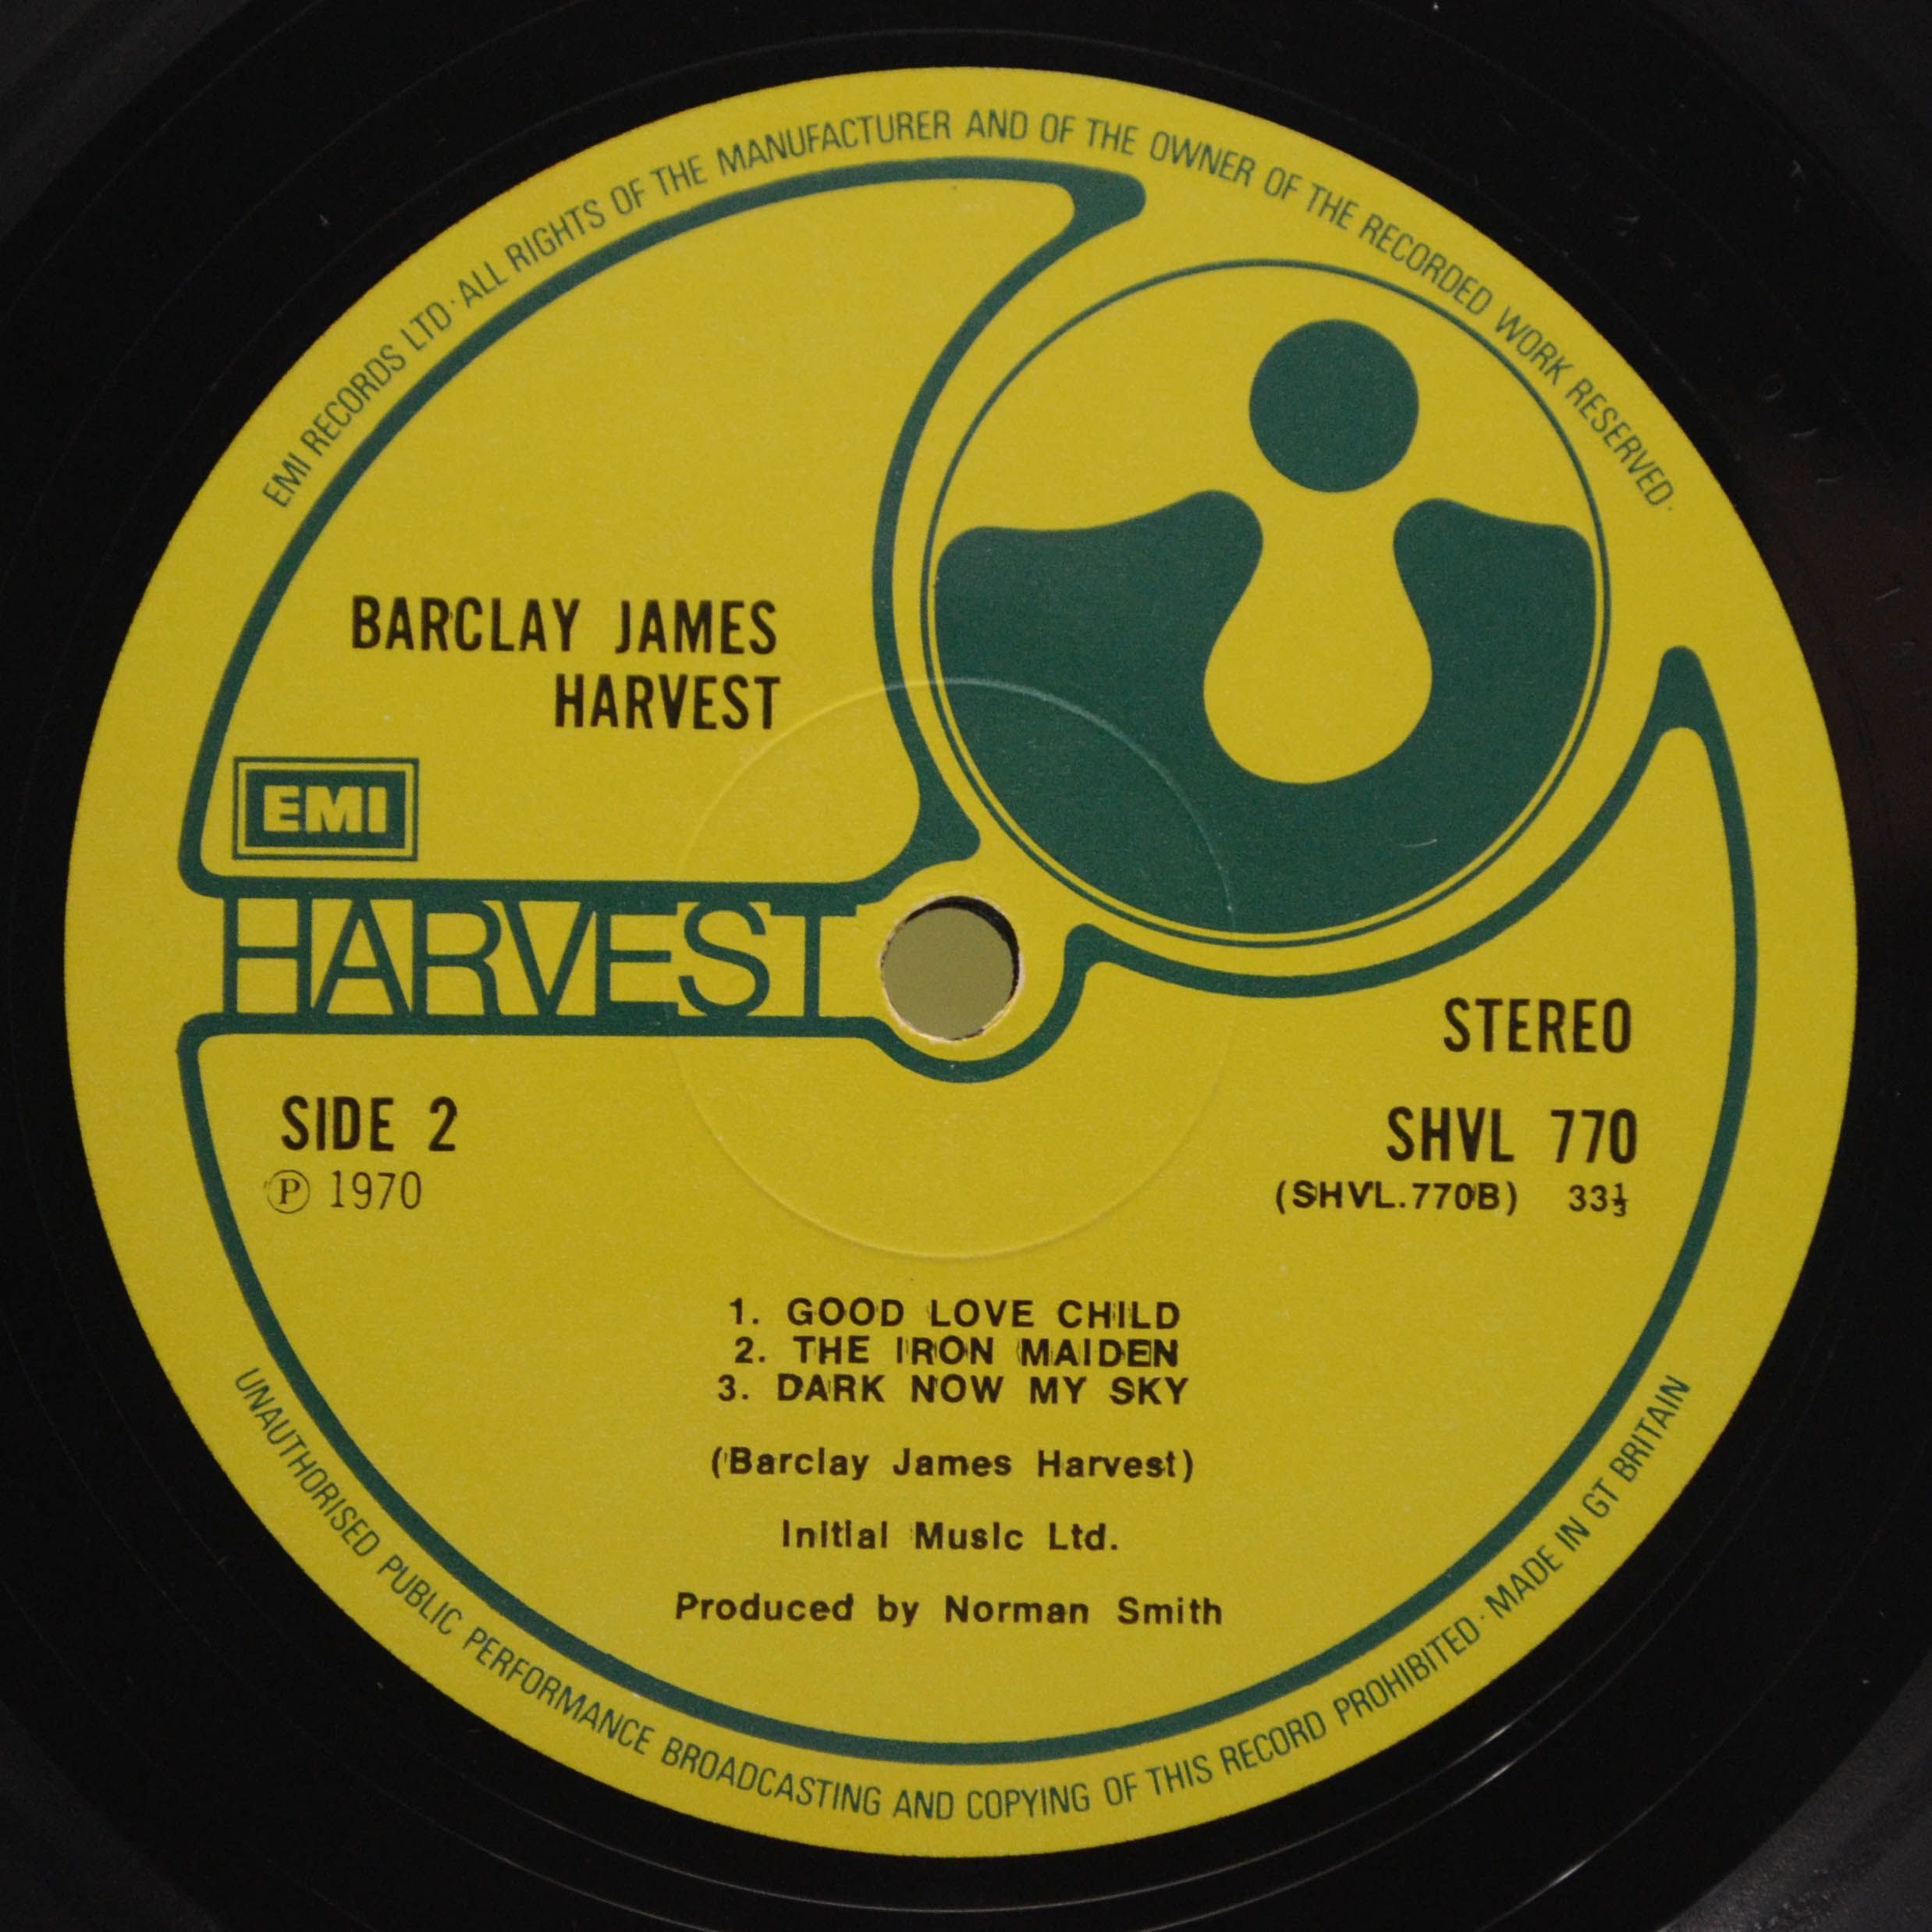 Barclay James Harvest — Barclay James Harvest, 1970